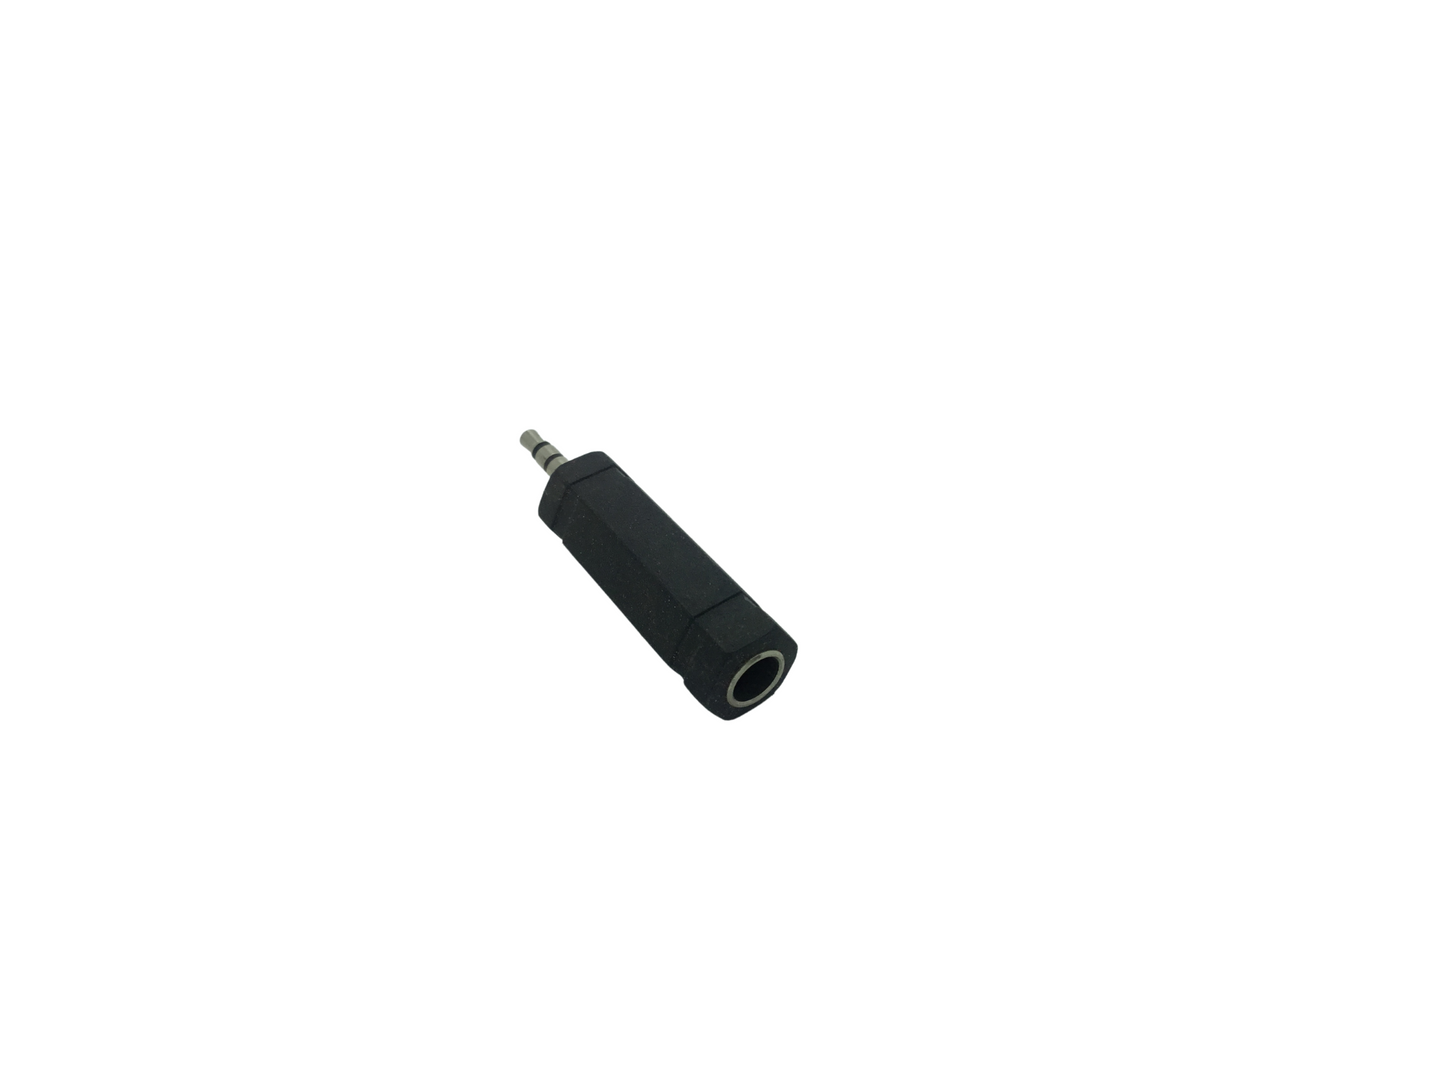 3.5mm 3 Pole Stereo Jack Plug to 6.35mm Stereo Jack Socket Adaptor - Black